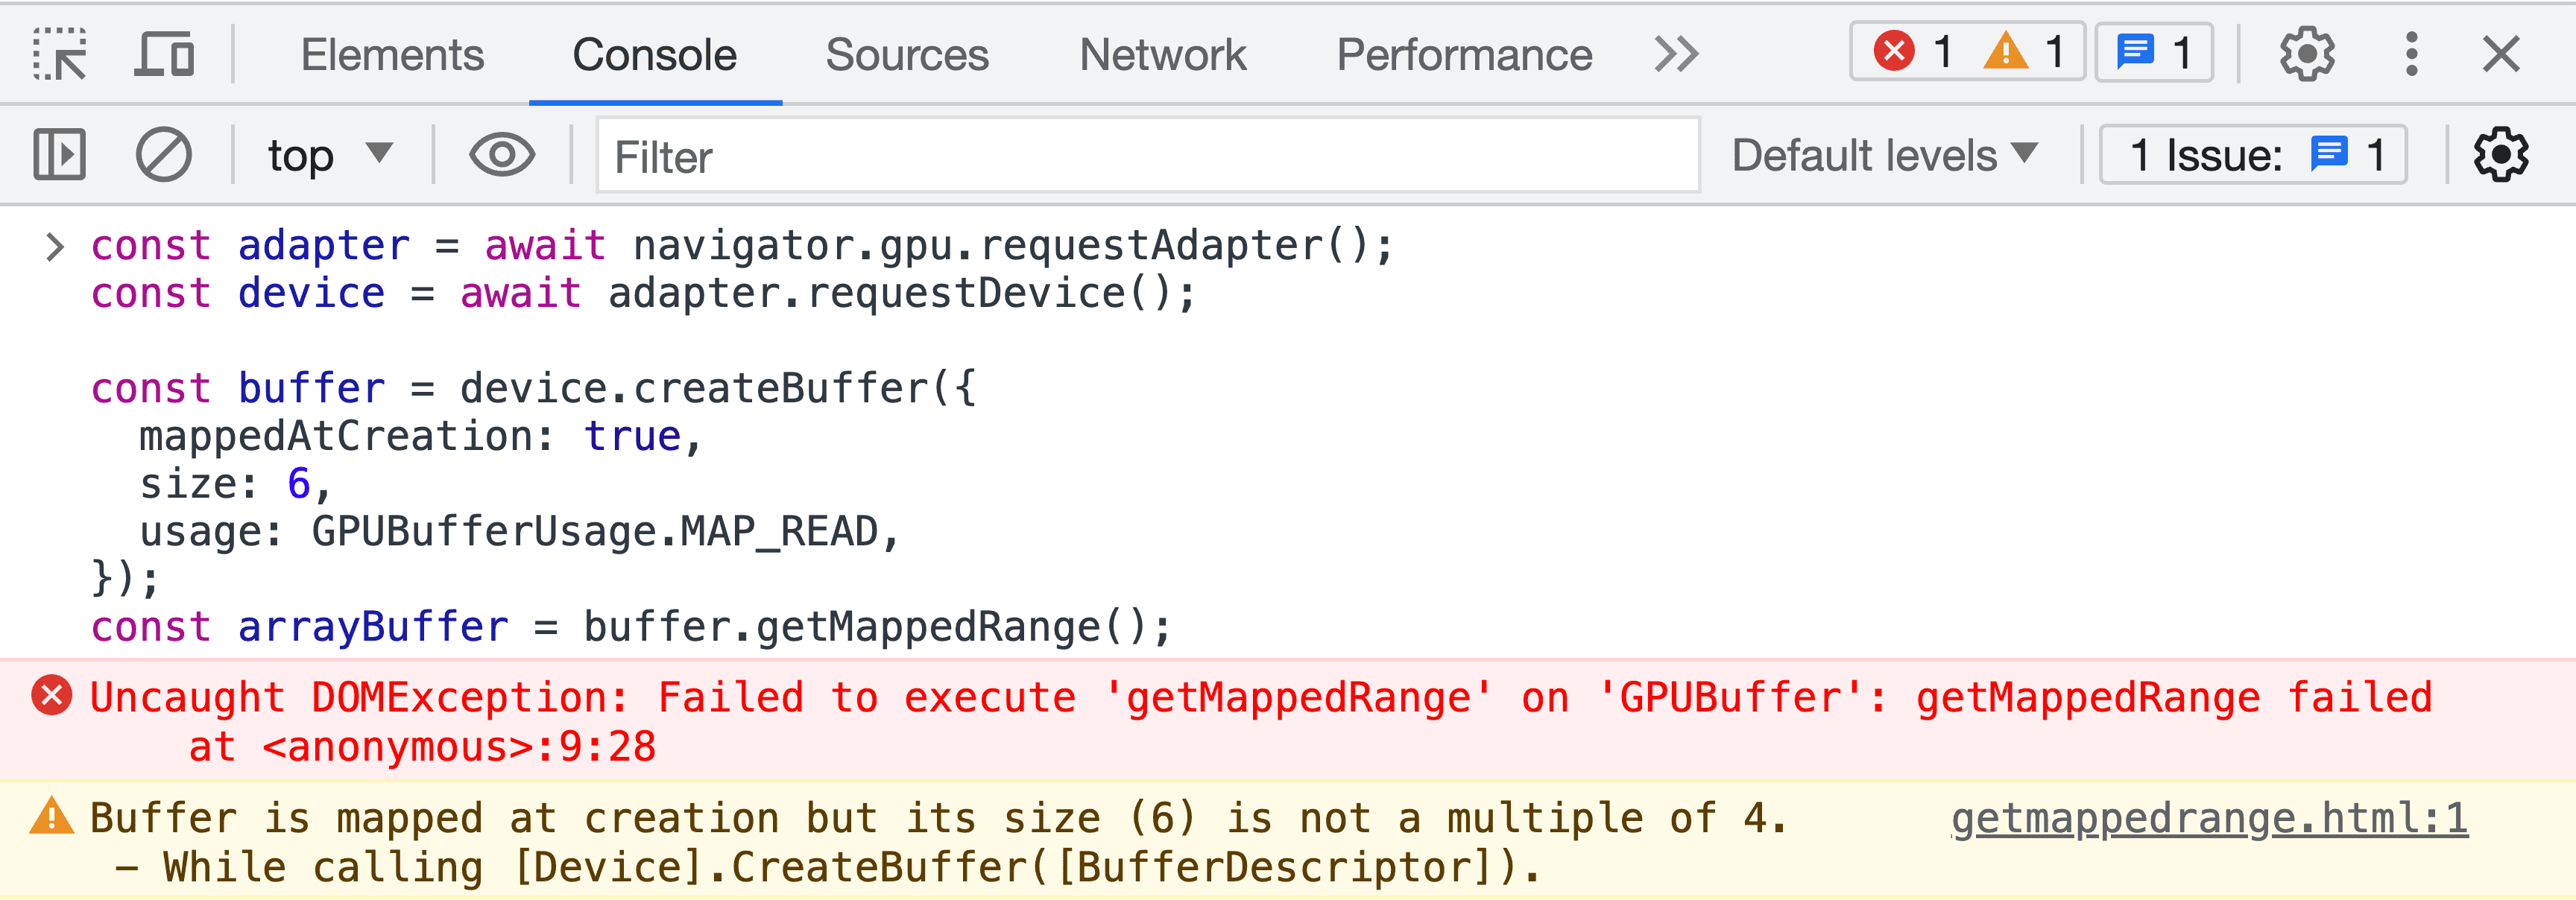 버퍼 유효성 검사 오류 메시지가 표시된 DevTools JavaScript 콘솔 스크린샷